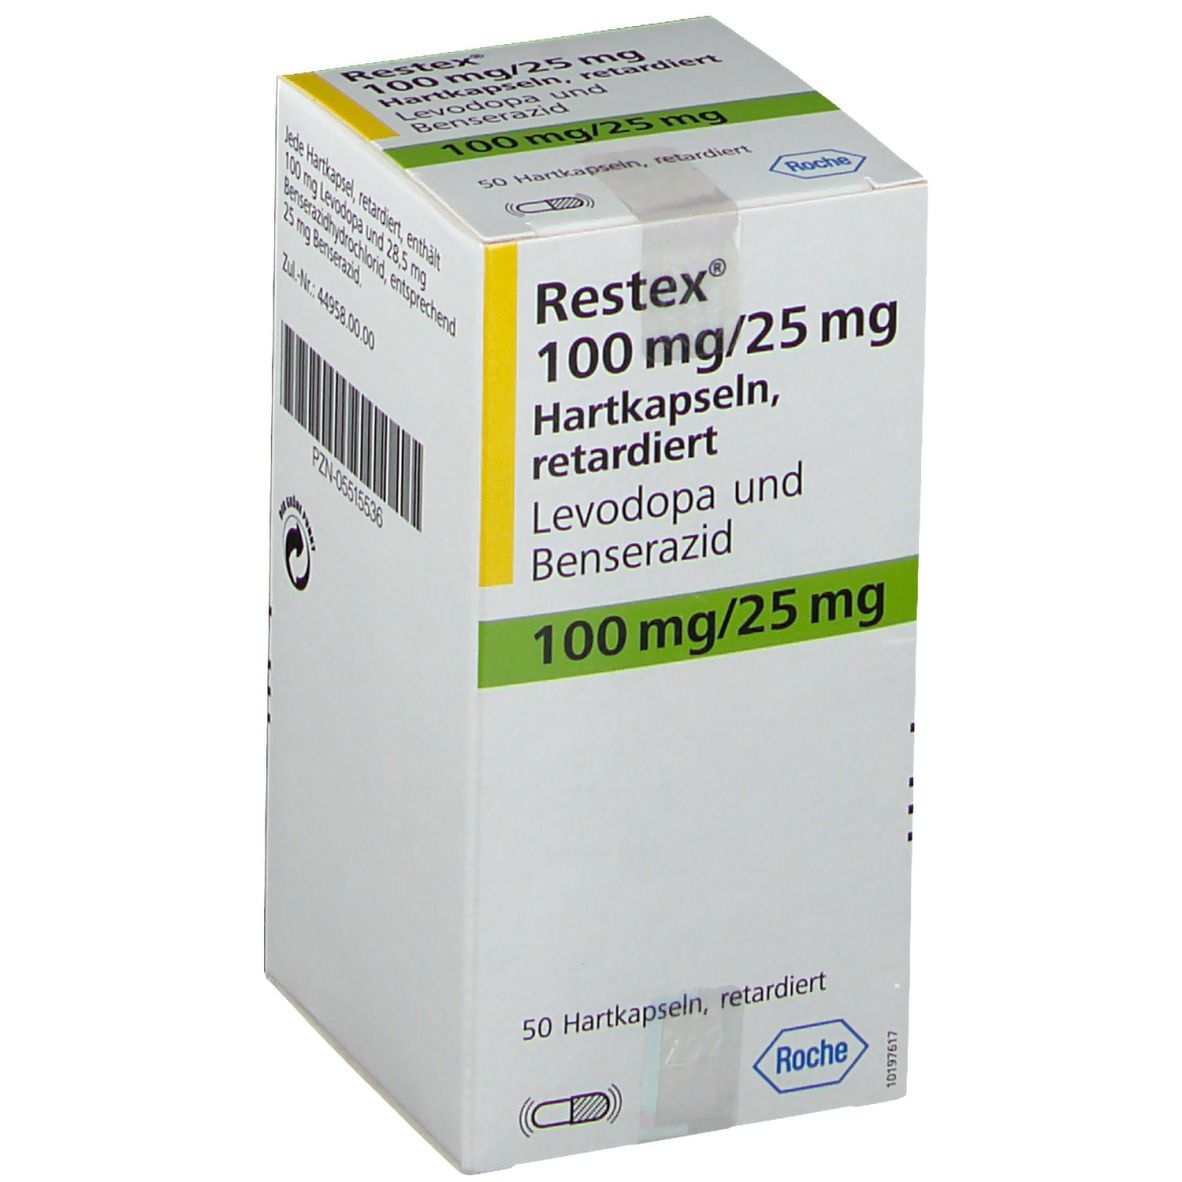 Restex® 100 mg/25 mg